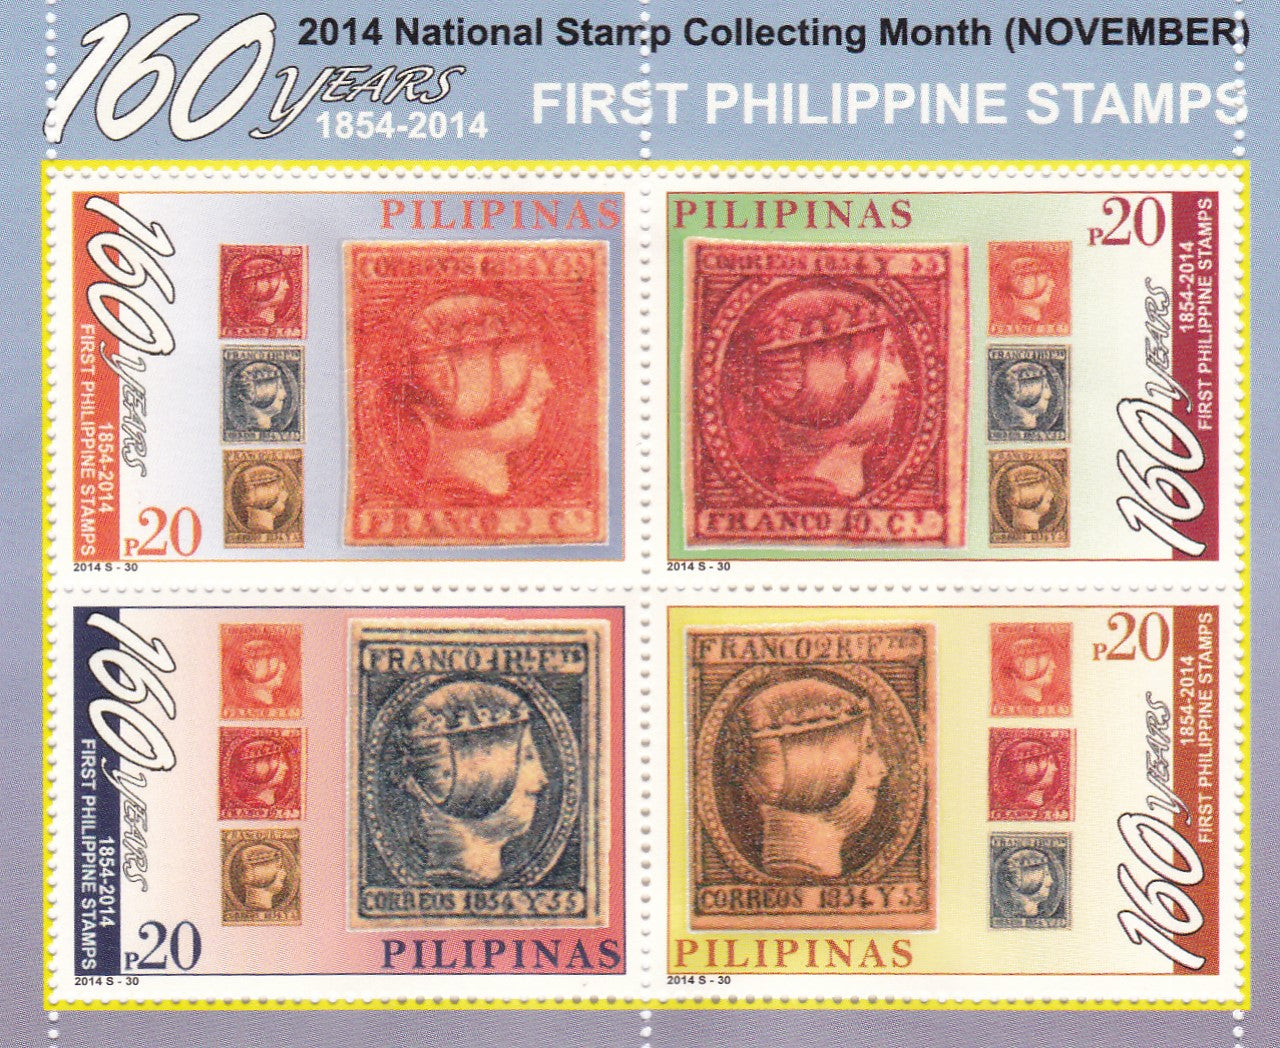 Philippine- First Philippine stamps